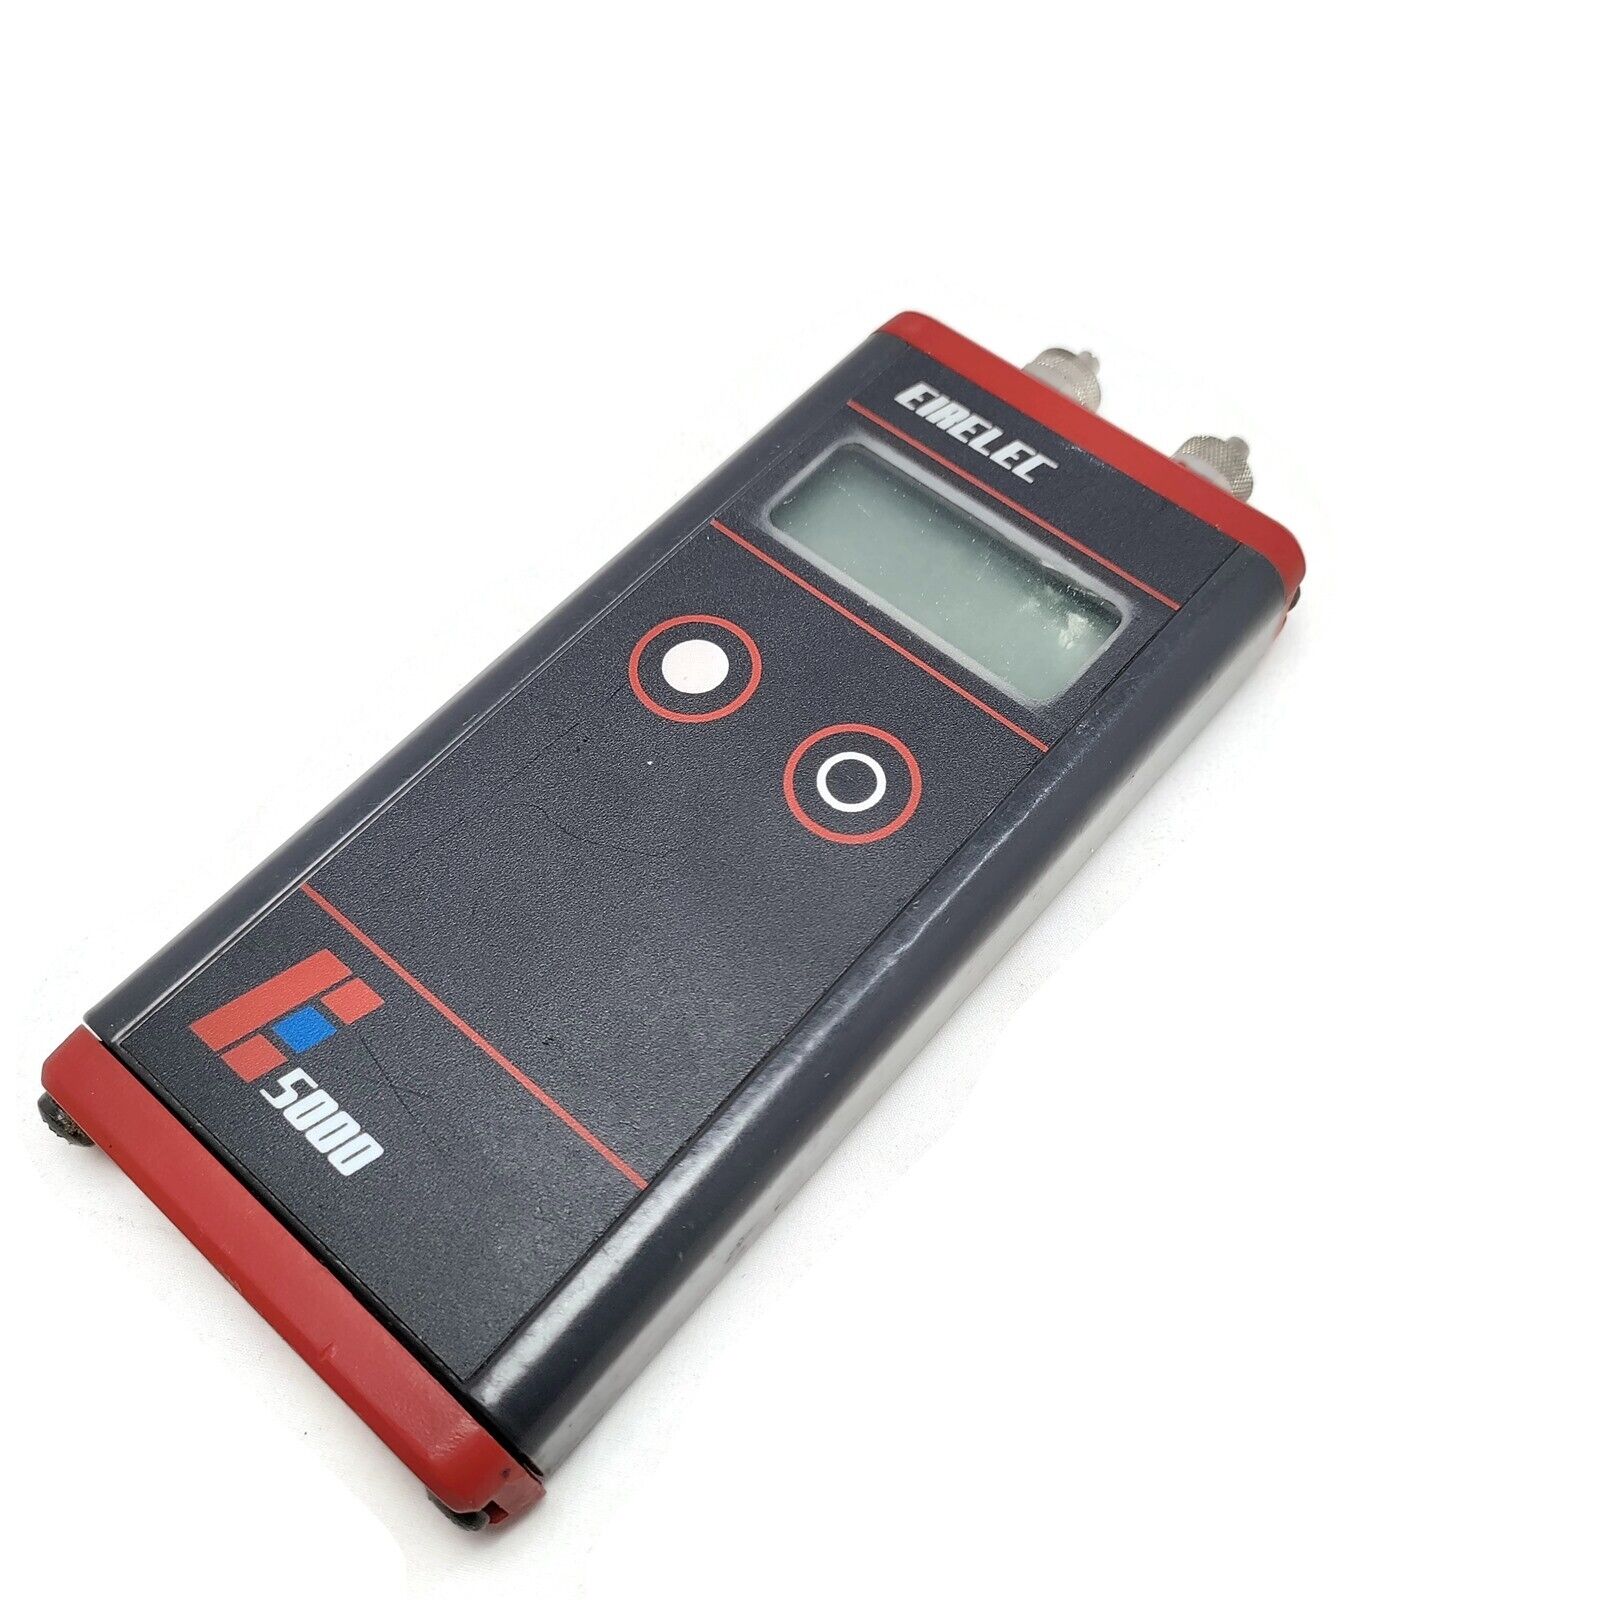 Eirelec 5000puh Digital Manometer. 0-7 Bar. Max Pressure 10 Bar.